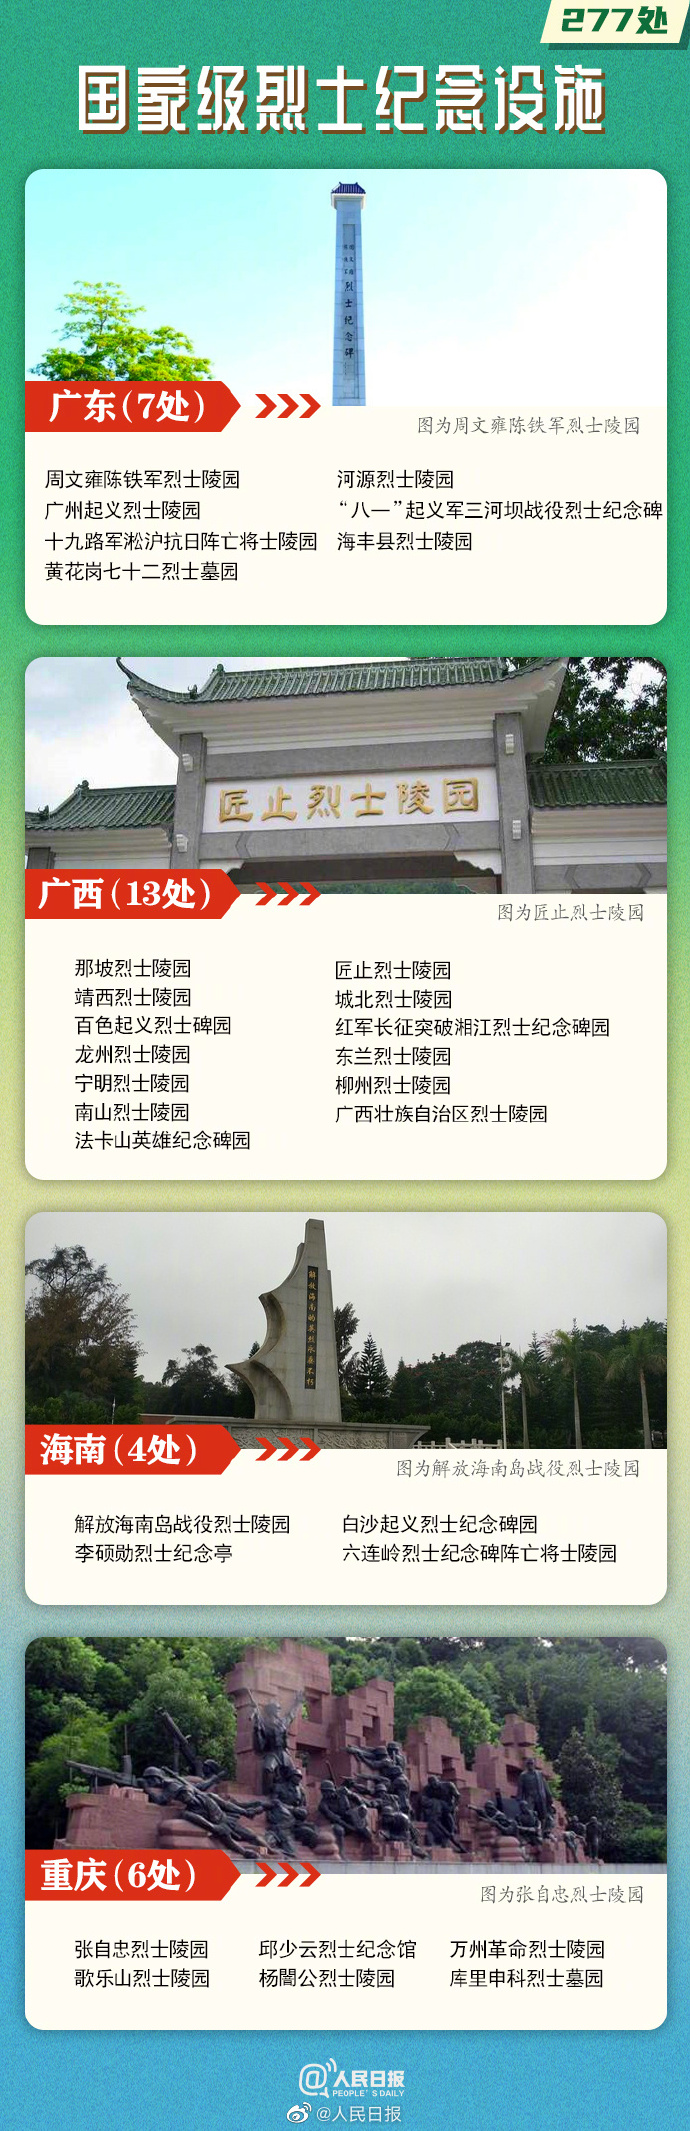 277处国家级烈士纪念设施名单公布，云南9处6.jpg